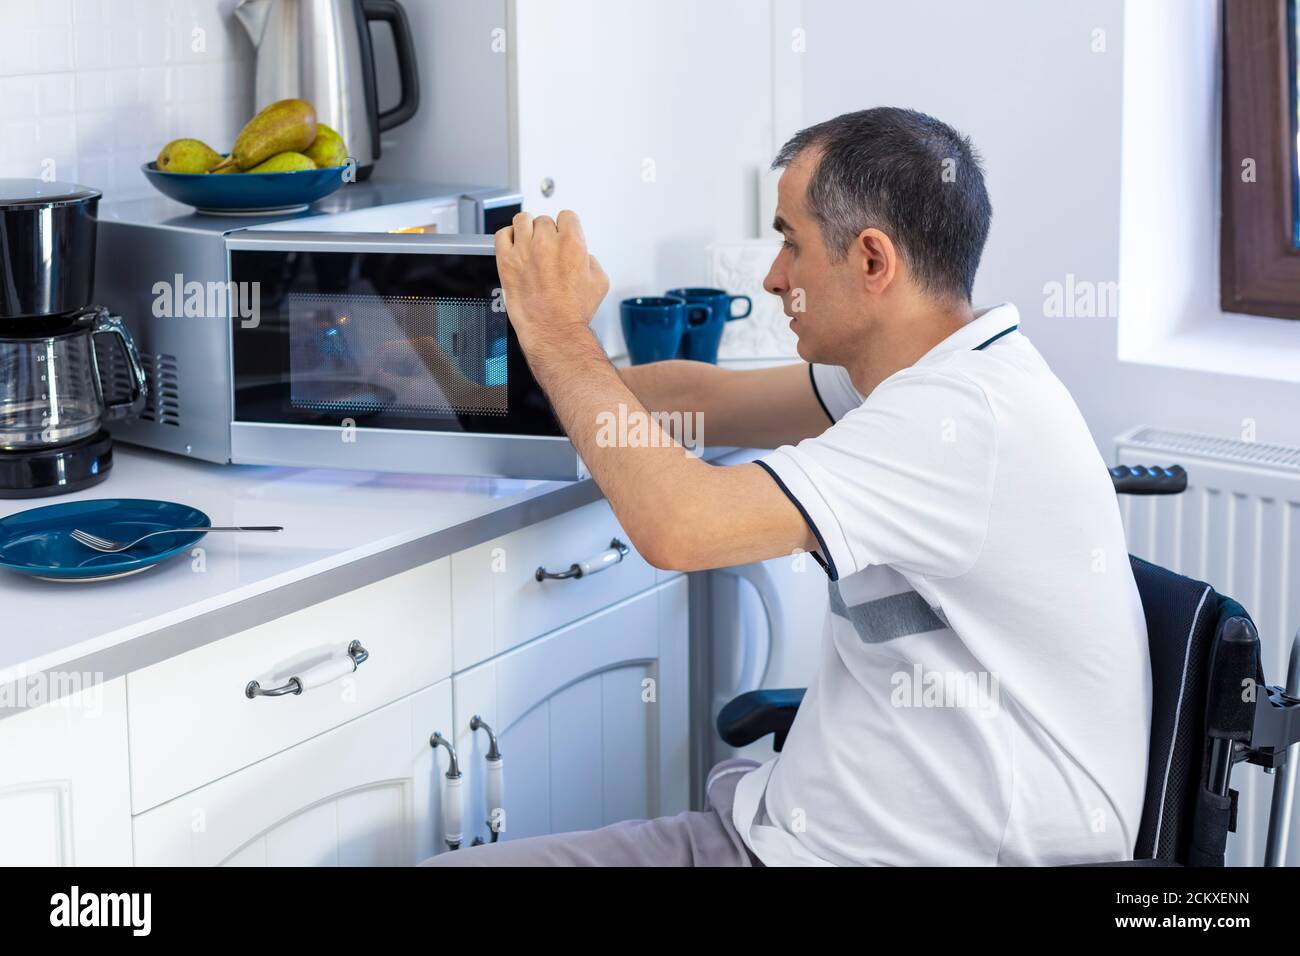 Giovane uomo in Whellchair che usa forno a microonde per cuocere in cucina. Mettere a fuoco sulla sua mano. Foto Stock